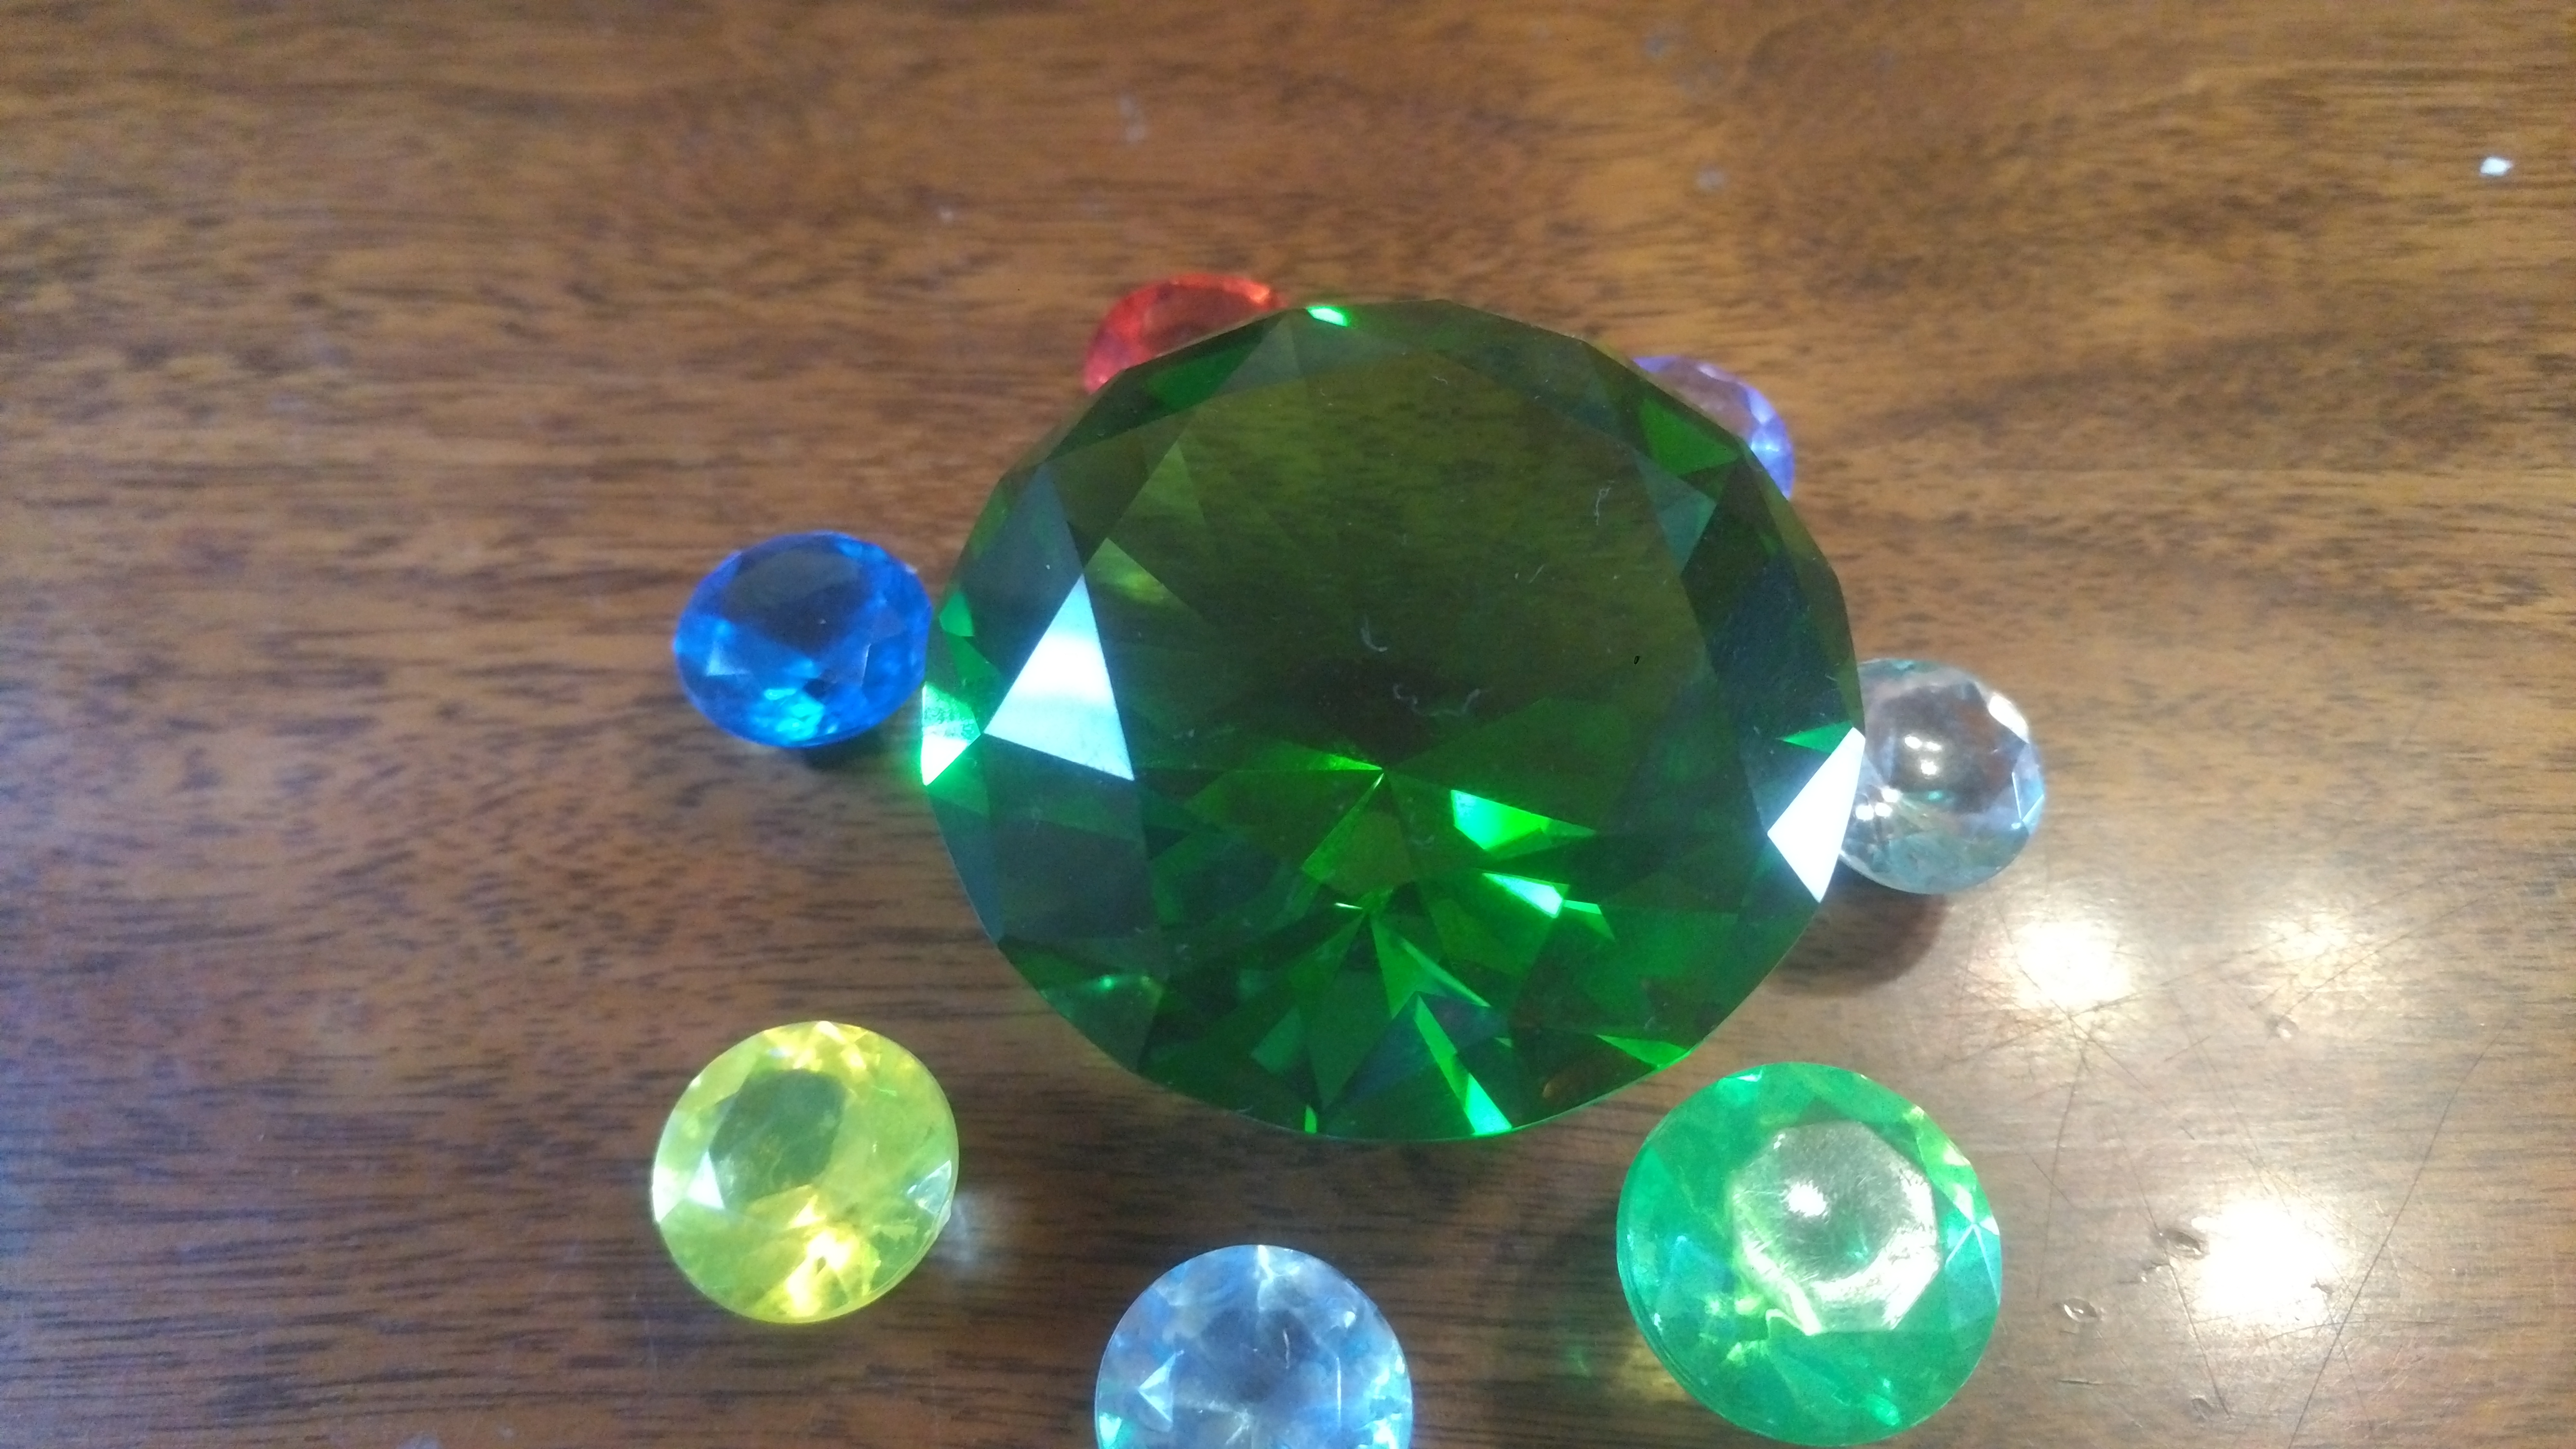 Chaos emerald replicas